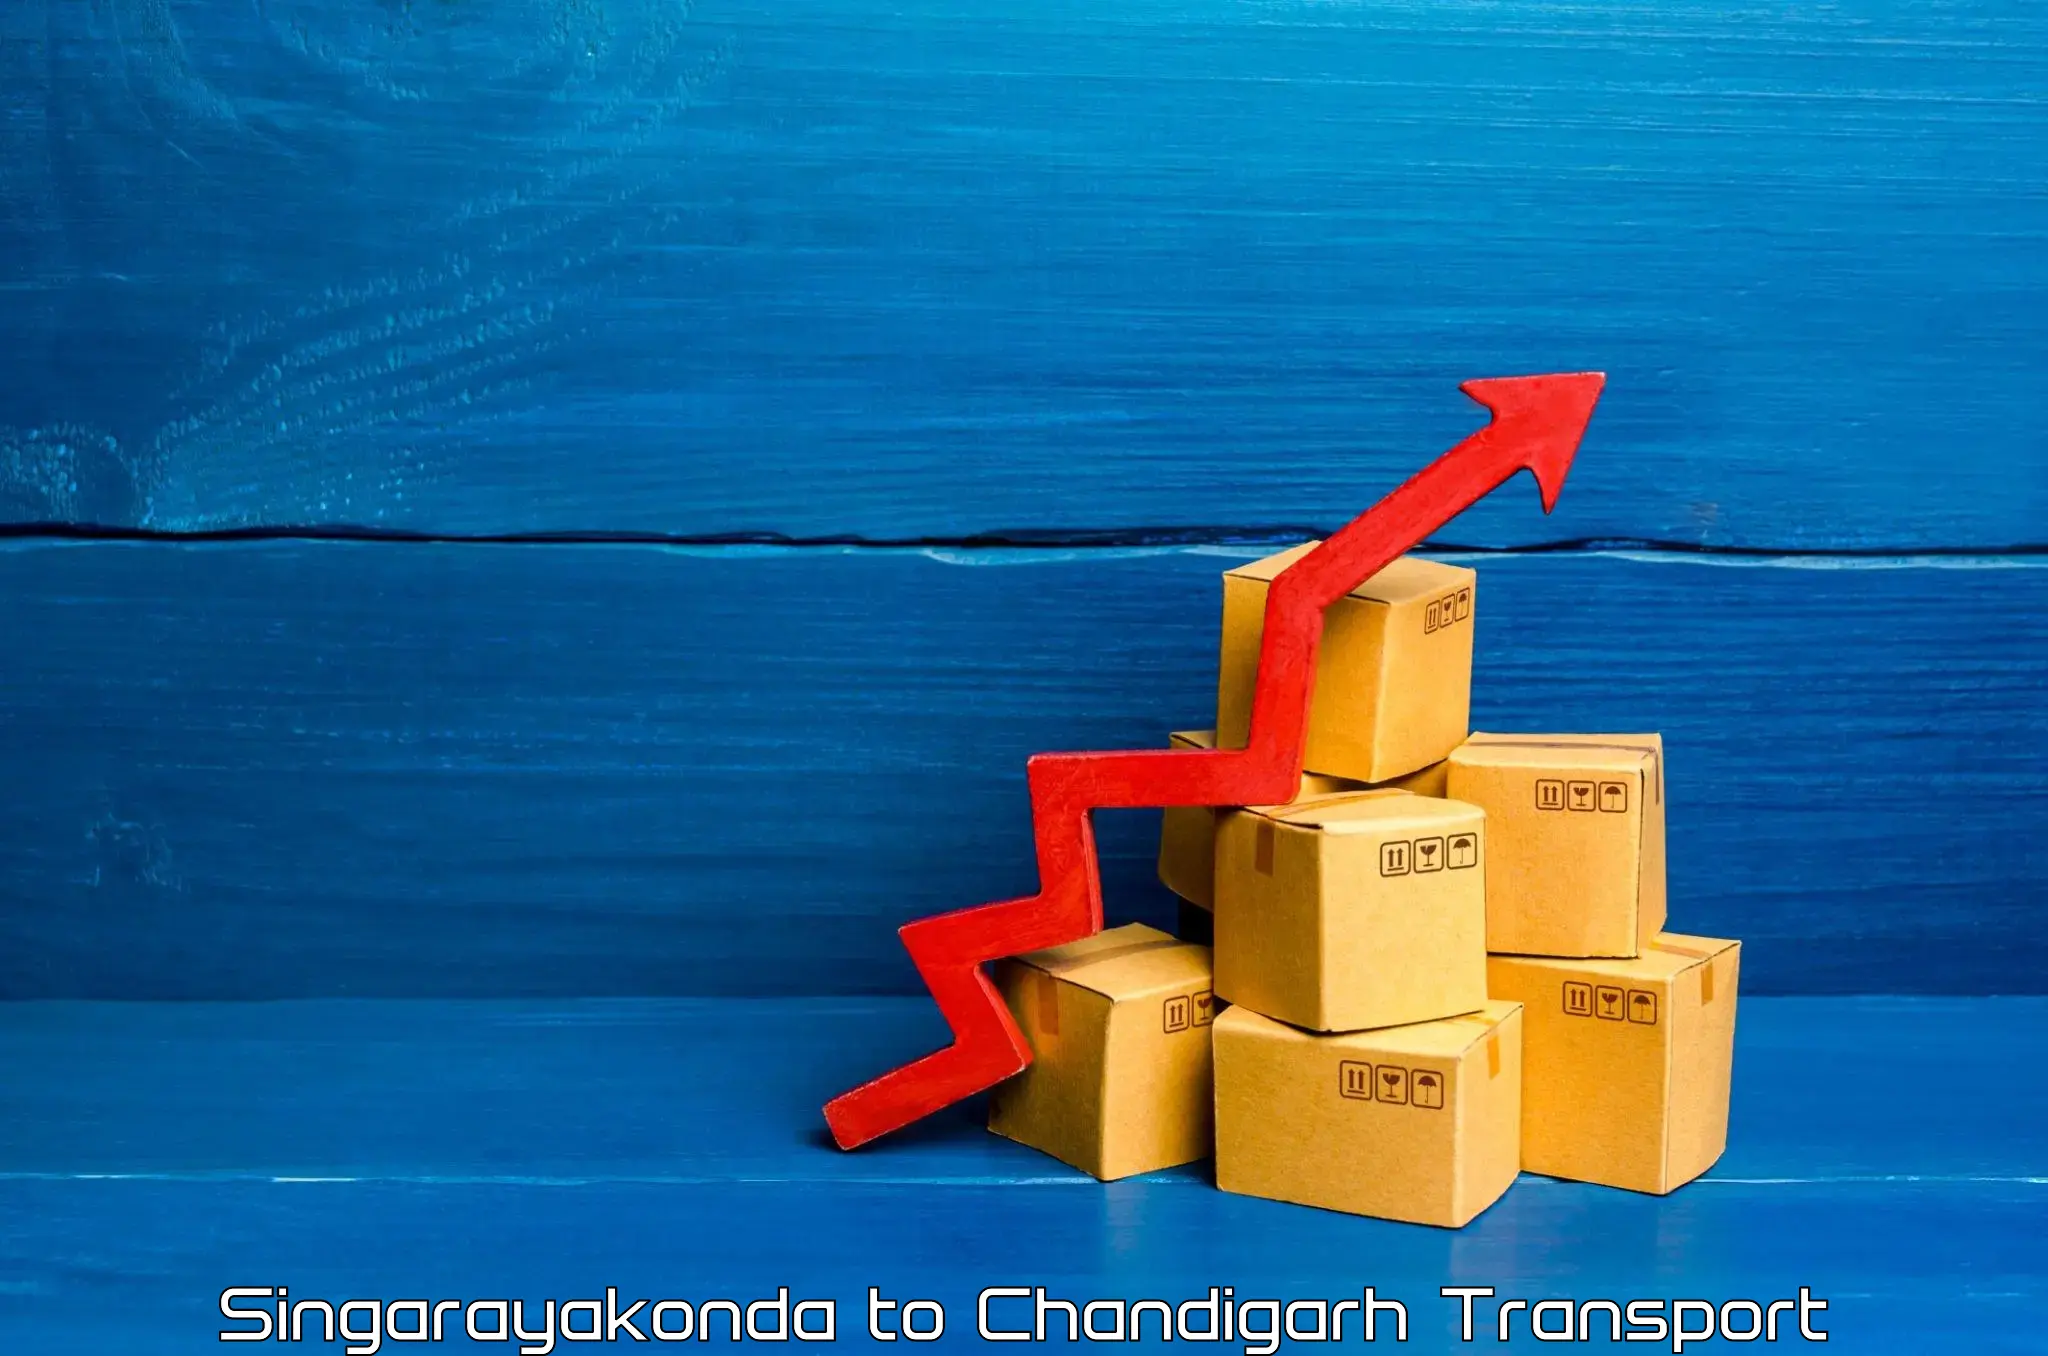 Container transport service Singarayakonda to Chandigarh